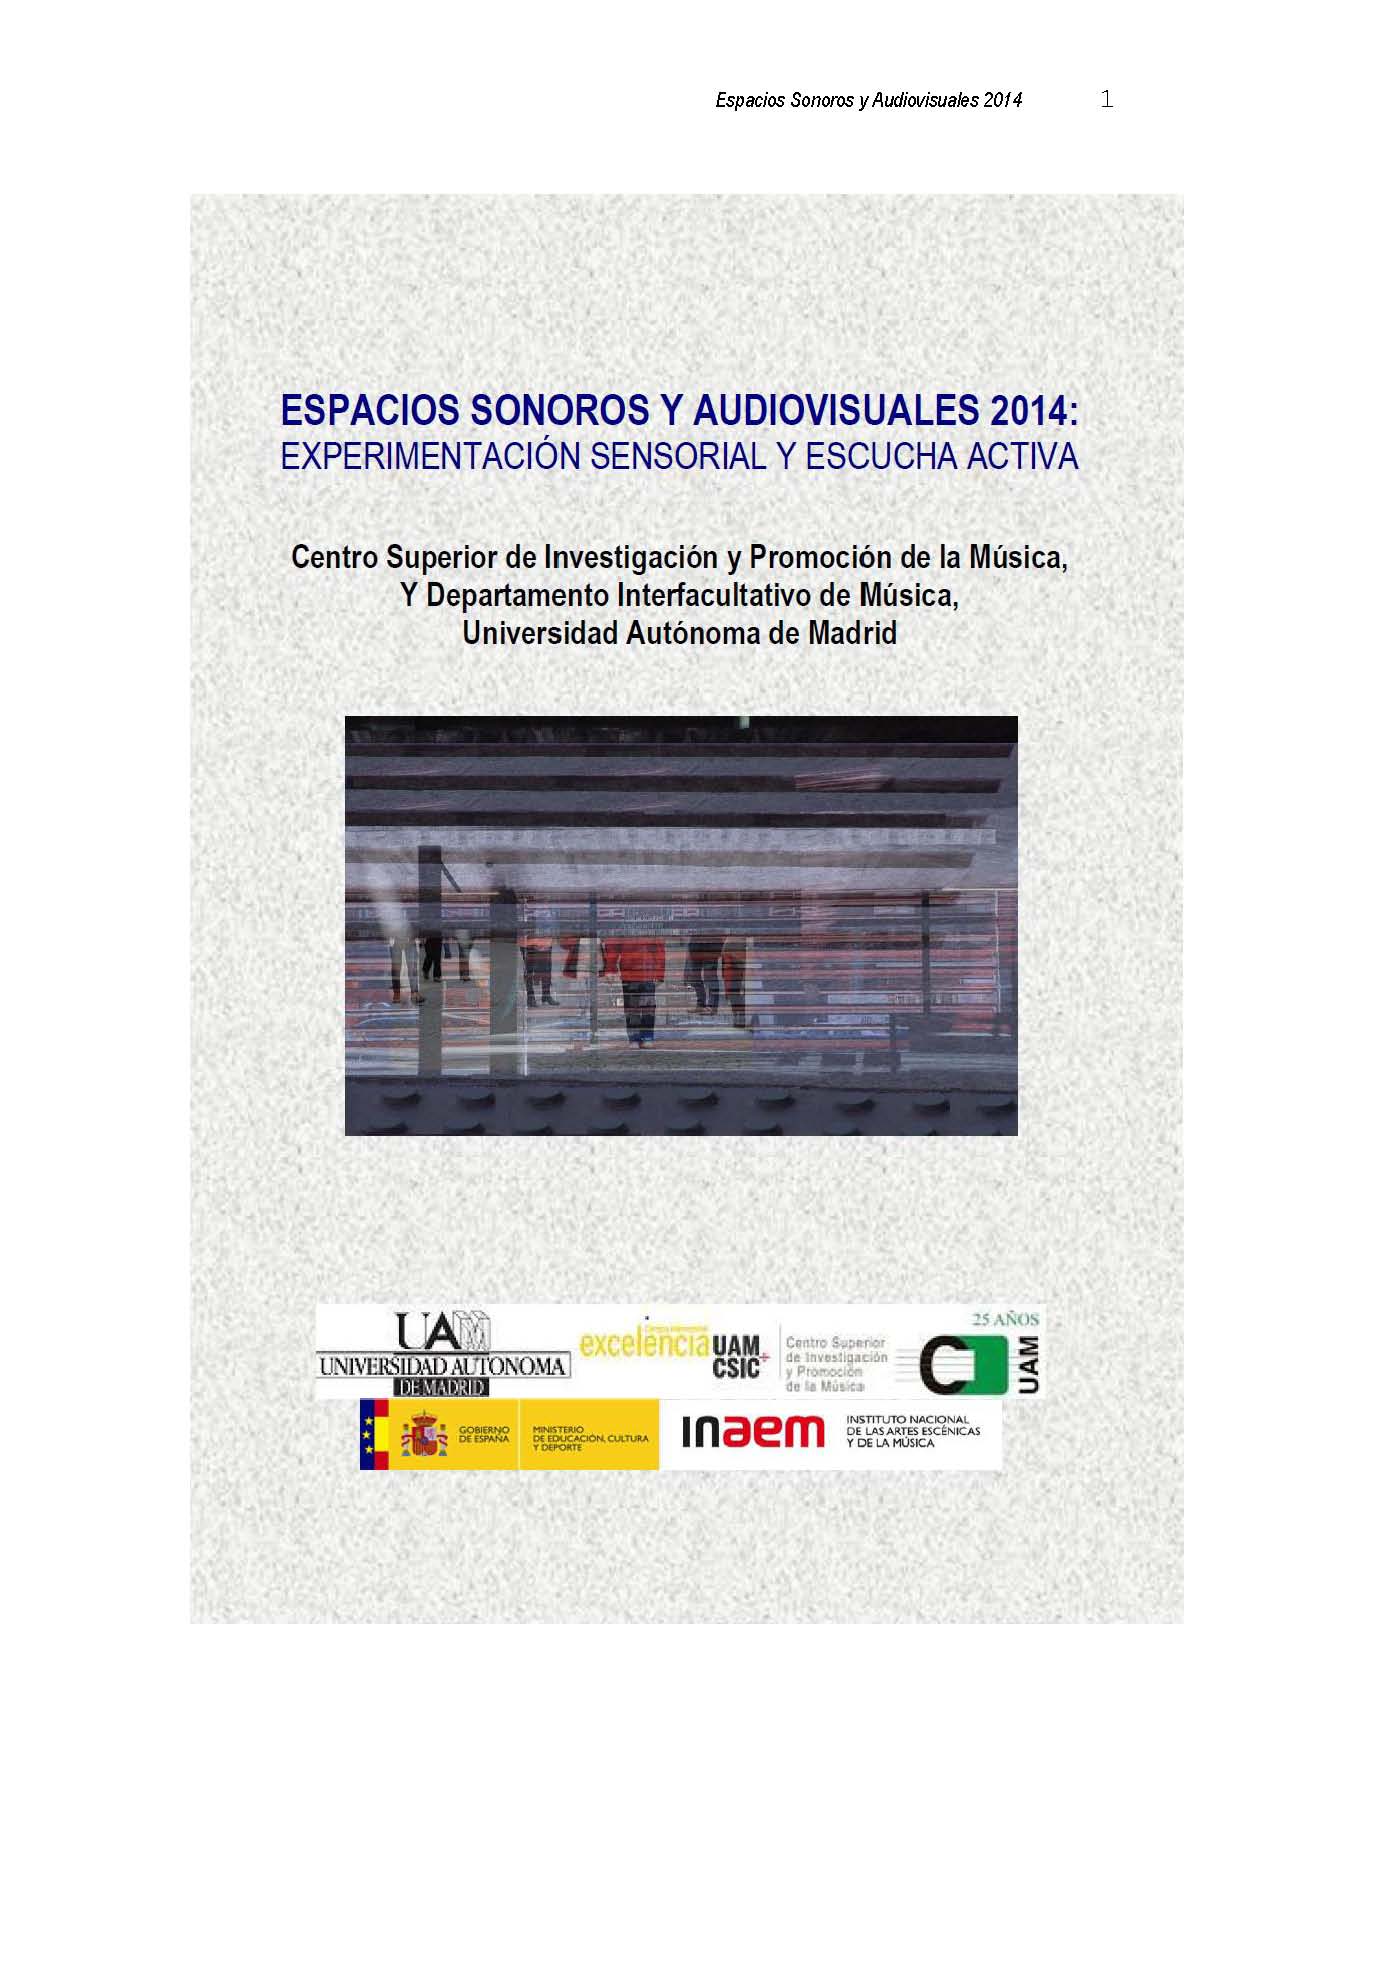 Imagen de portada del libro Espacios sonoros y audiovisuales 2014